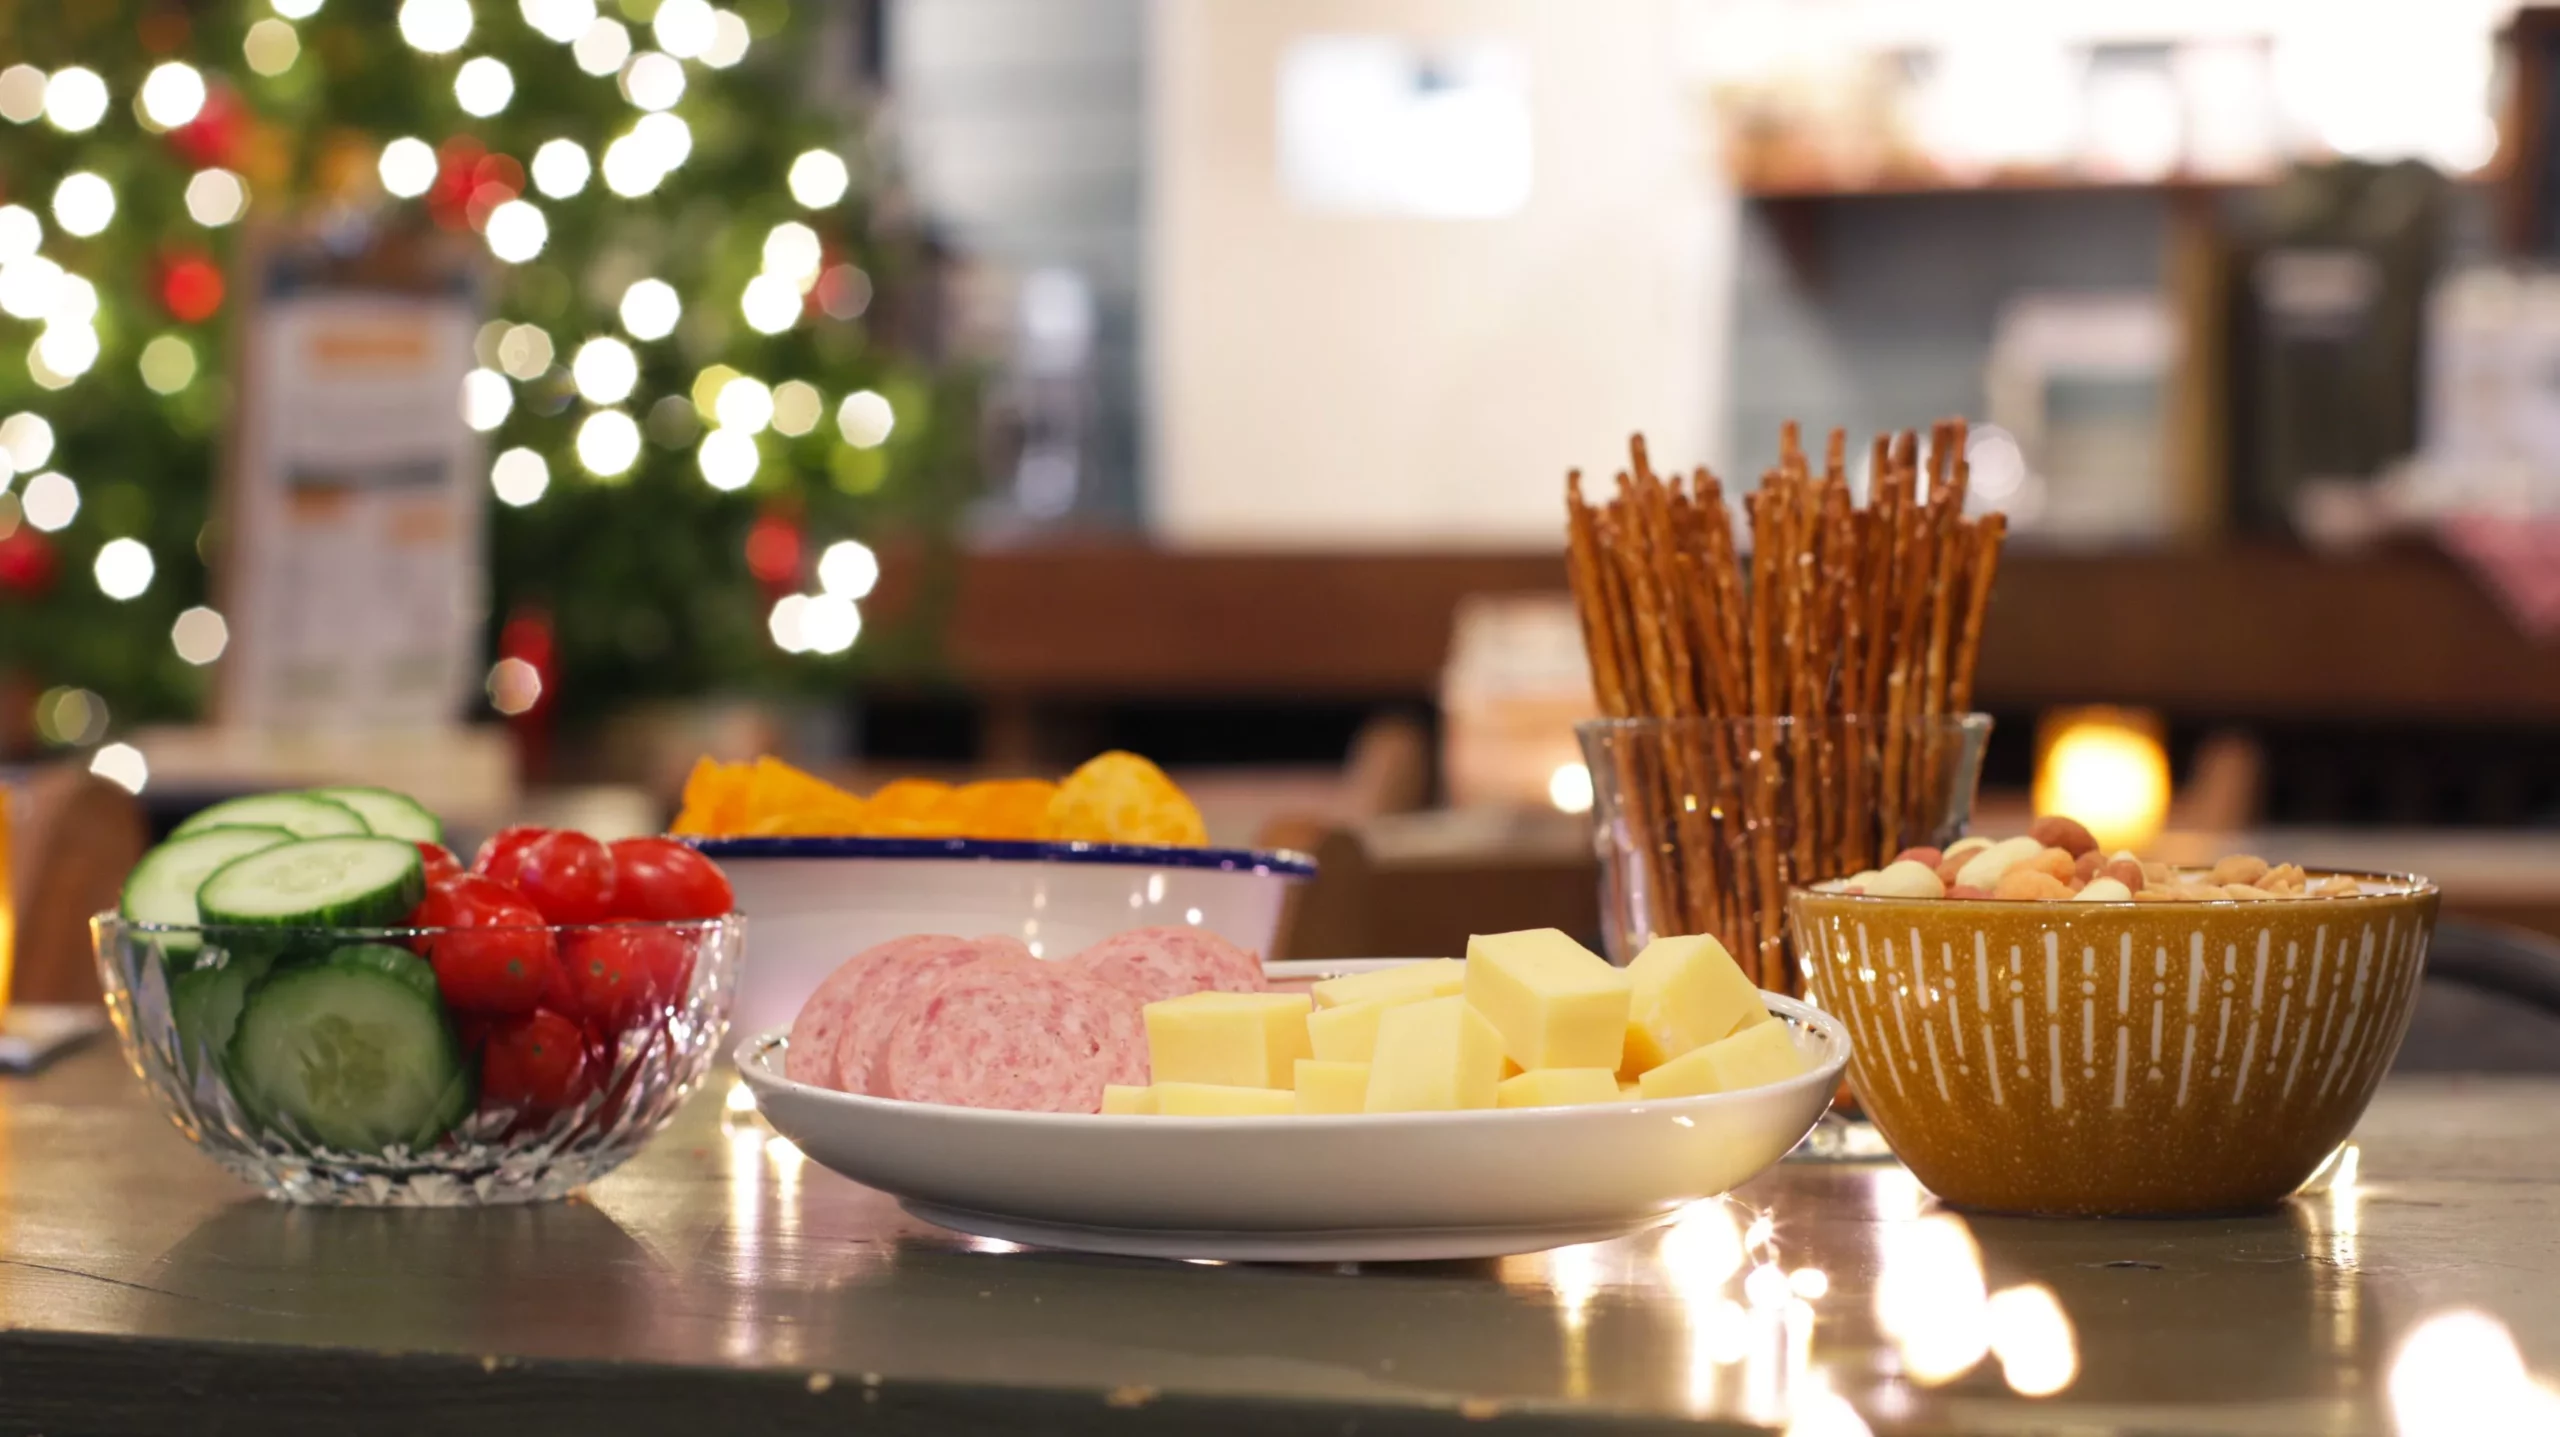 Heerlijke borrelhapjes op tafel met kaas, worst, chips, nootjes en gezonde snacks voor een actief groepsuitje in een leuk museum